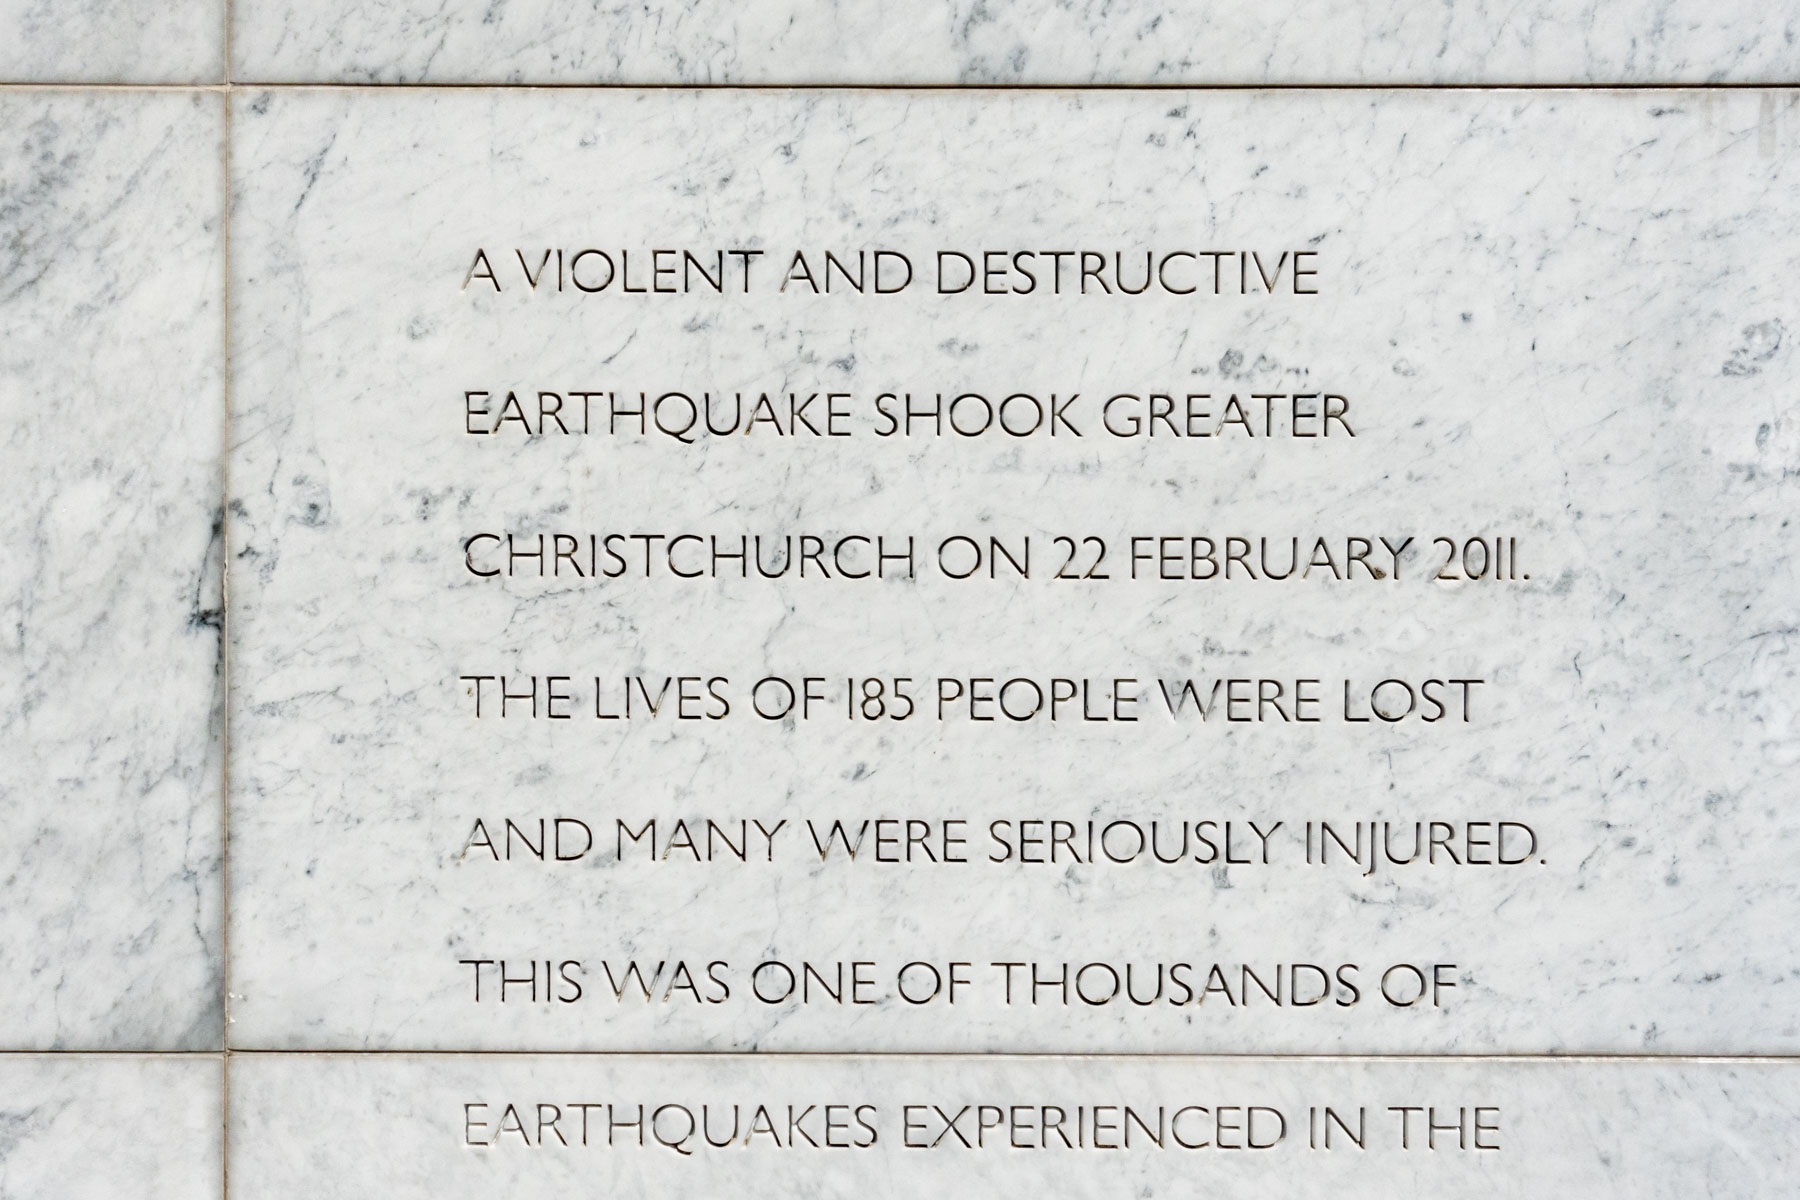 Sculpté dans le marbre, un texte en anglais explique qu’un violent tremblement de terre à dévasté la ville de Christchurch, faisant 185 morts et de nombreux blessés.